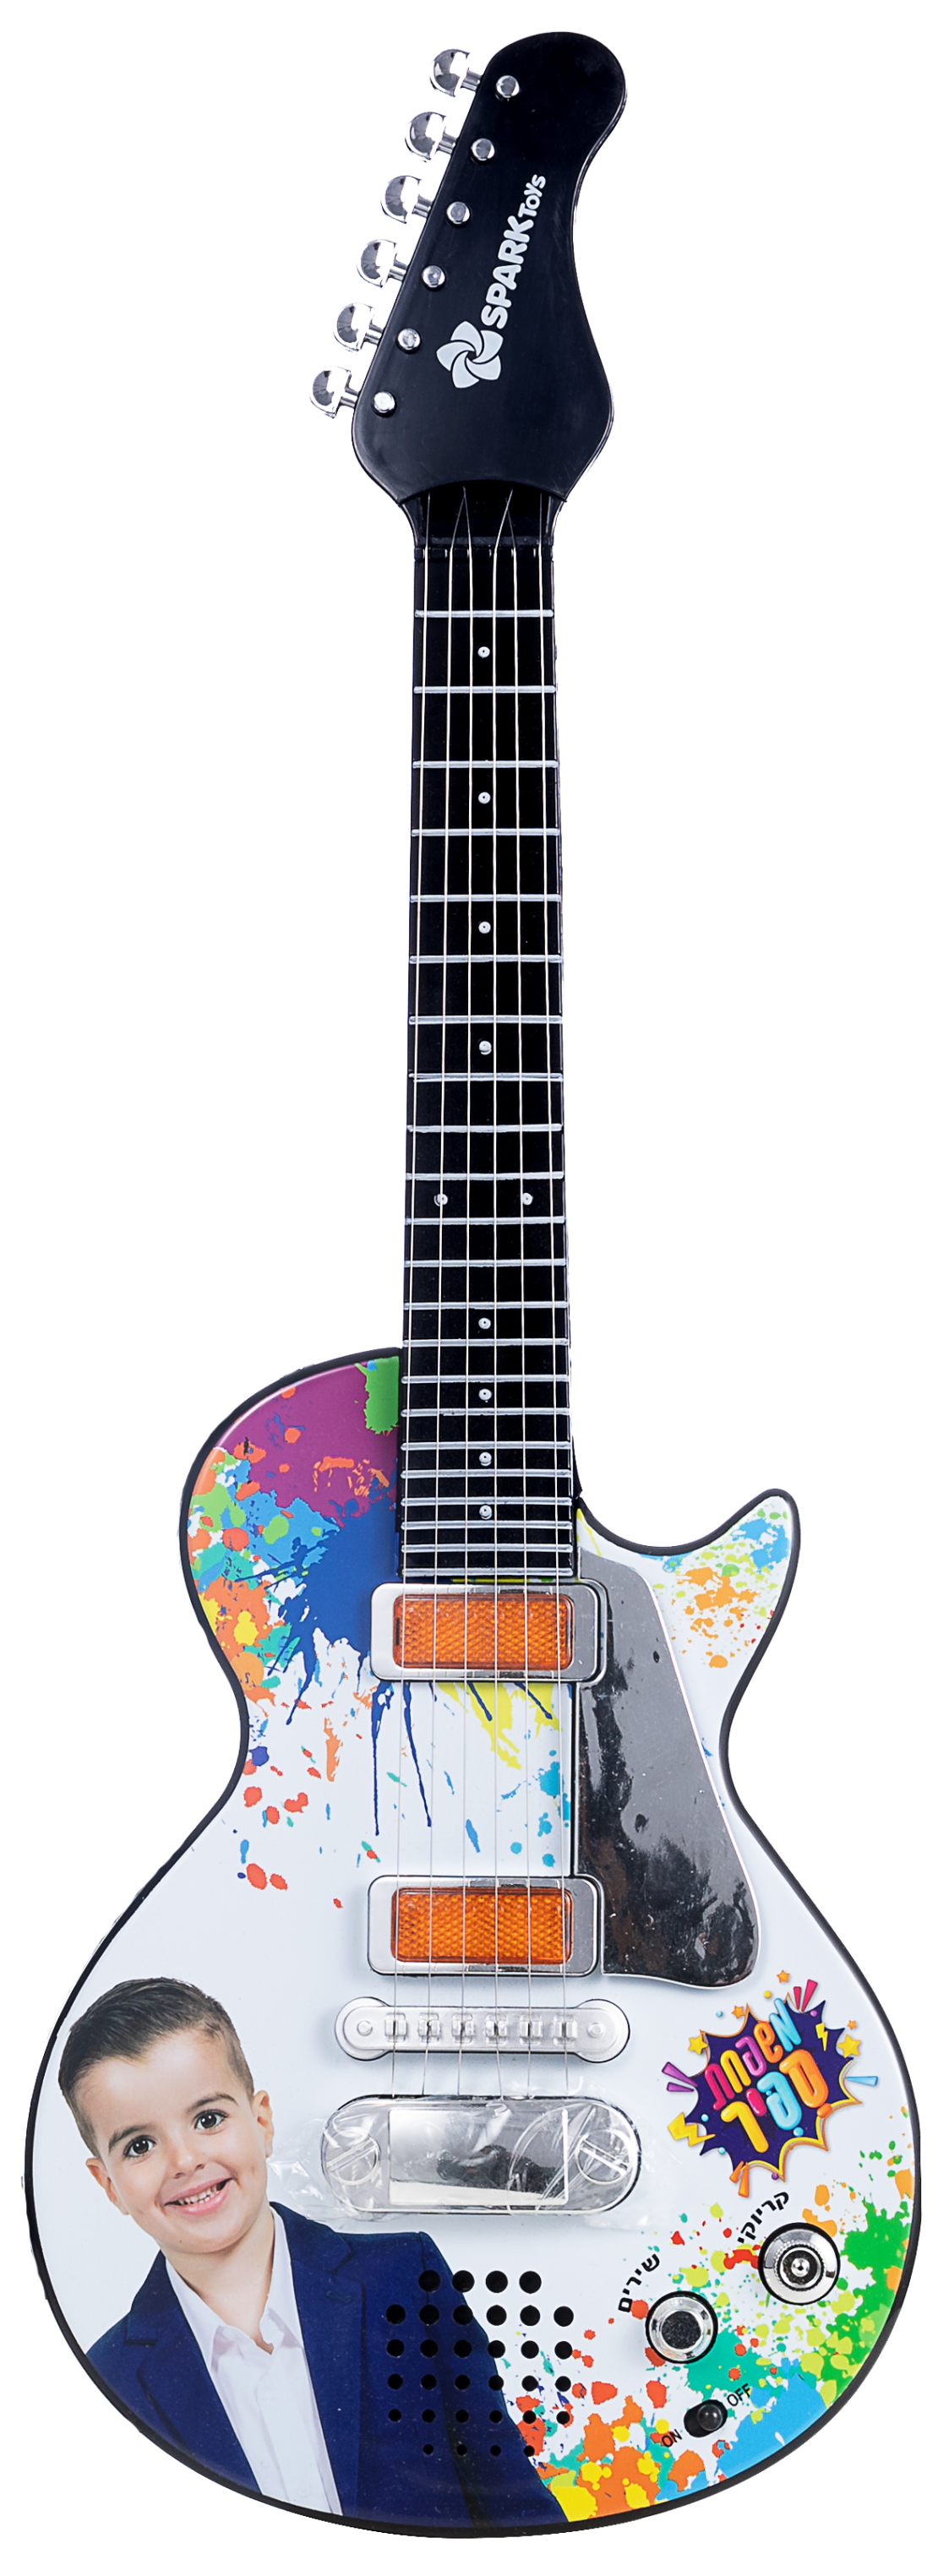 הגיטרה של אלרועי- גיטרה חשמלית מטורפת (שירים + קריוקי)